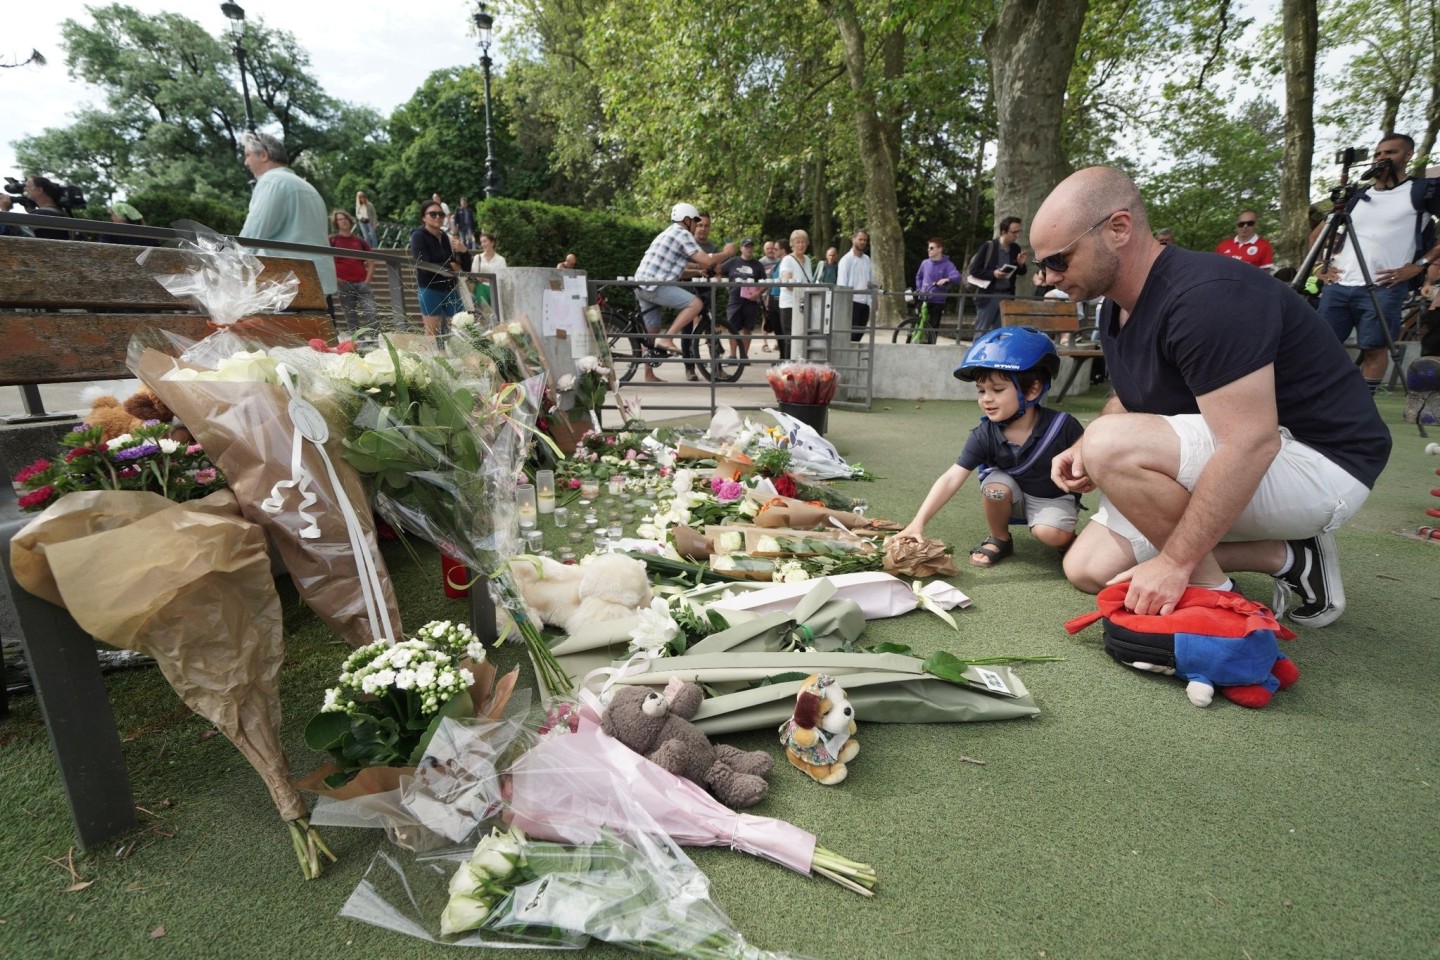 Nach dem Messerangriff in Annecy haben Menschen in der Nähe des Tatorts Blumen und Kuscheltiere abgelegt und gedenken der Opfer.